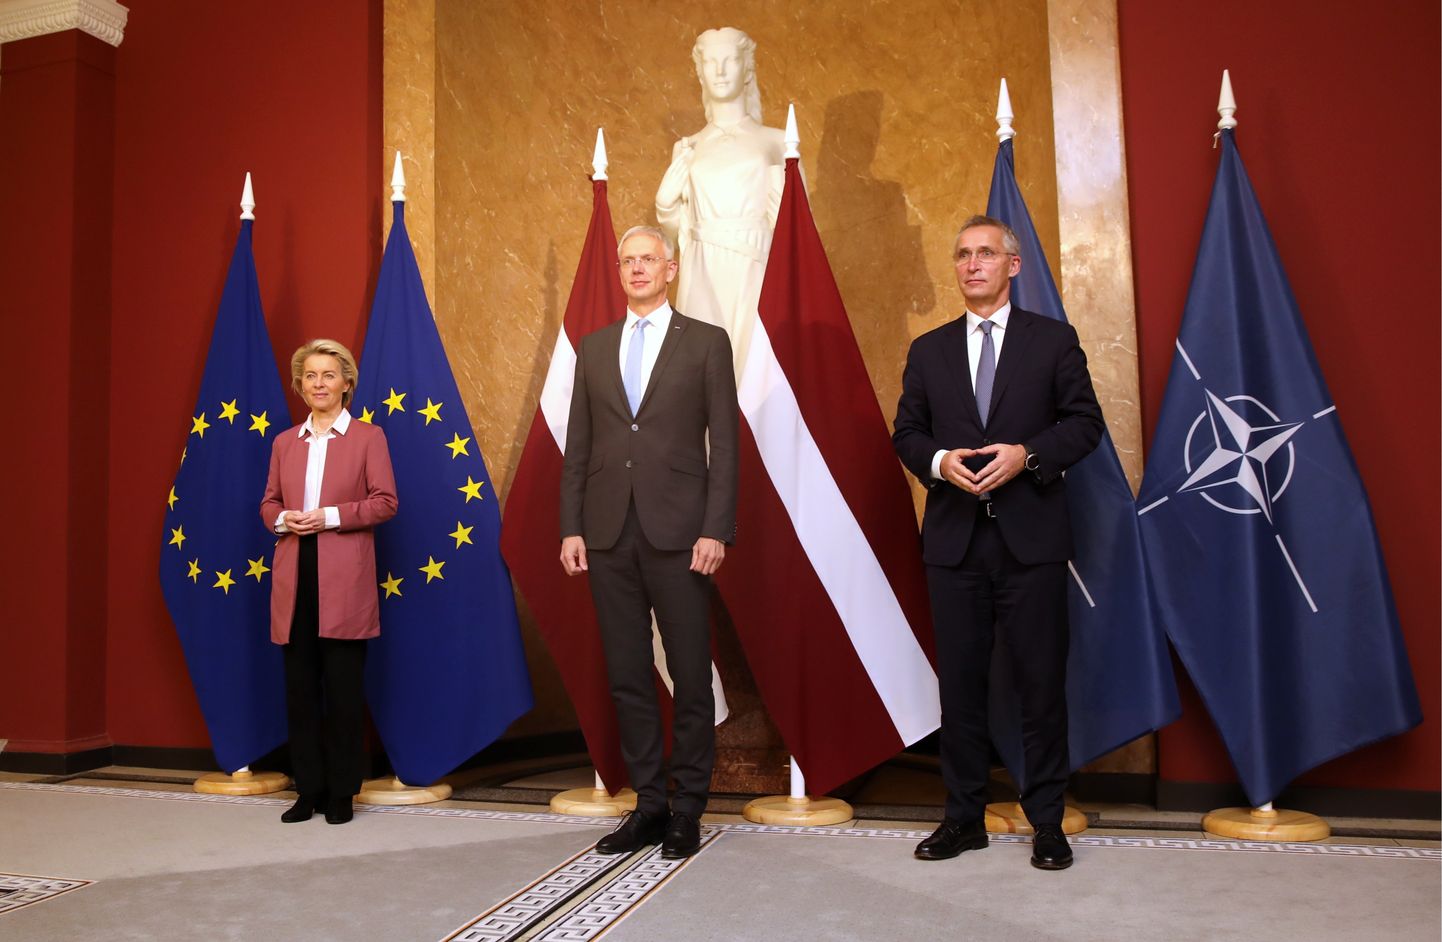 Eiropas Komisijas priekšsēdētāja Urzula fon der Leiena, Ministru prezidents Krišjānis Kariņš un NATO ģenerālsekretārs Jenss Stoltenbergs pirms tikšanās Ministru kabinetā, kurā pārrunās aktuālo situāciju uz Eiropas Savienības ārējās robežas ar Baltkrieviju un reģionālās drošības jautājumu.